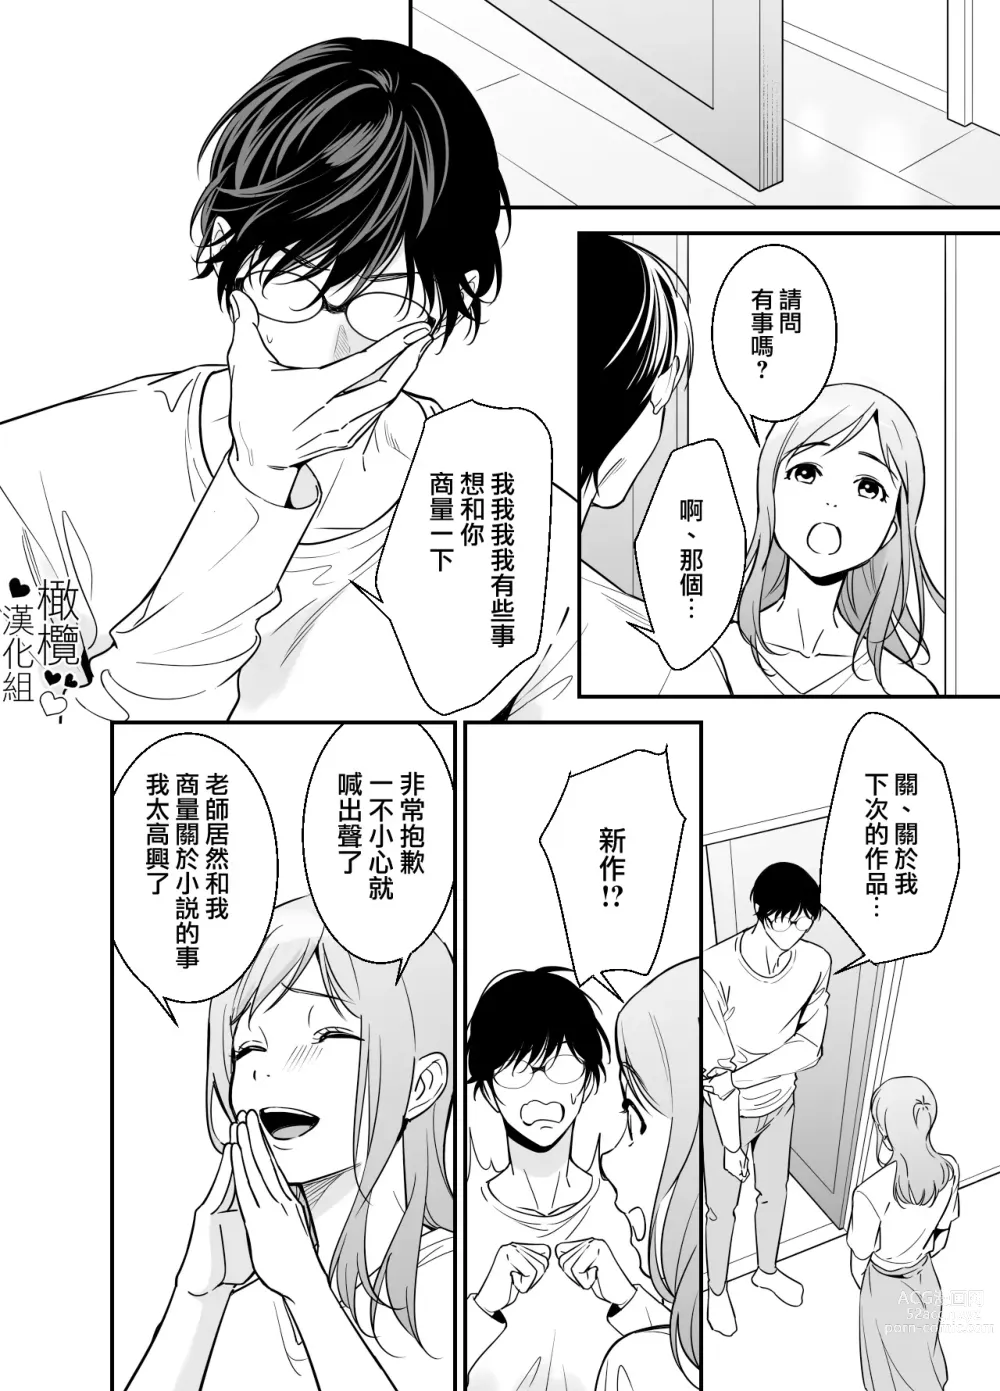 Page 13 of doujinshi 处男小说家和家政妇小姐